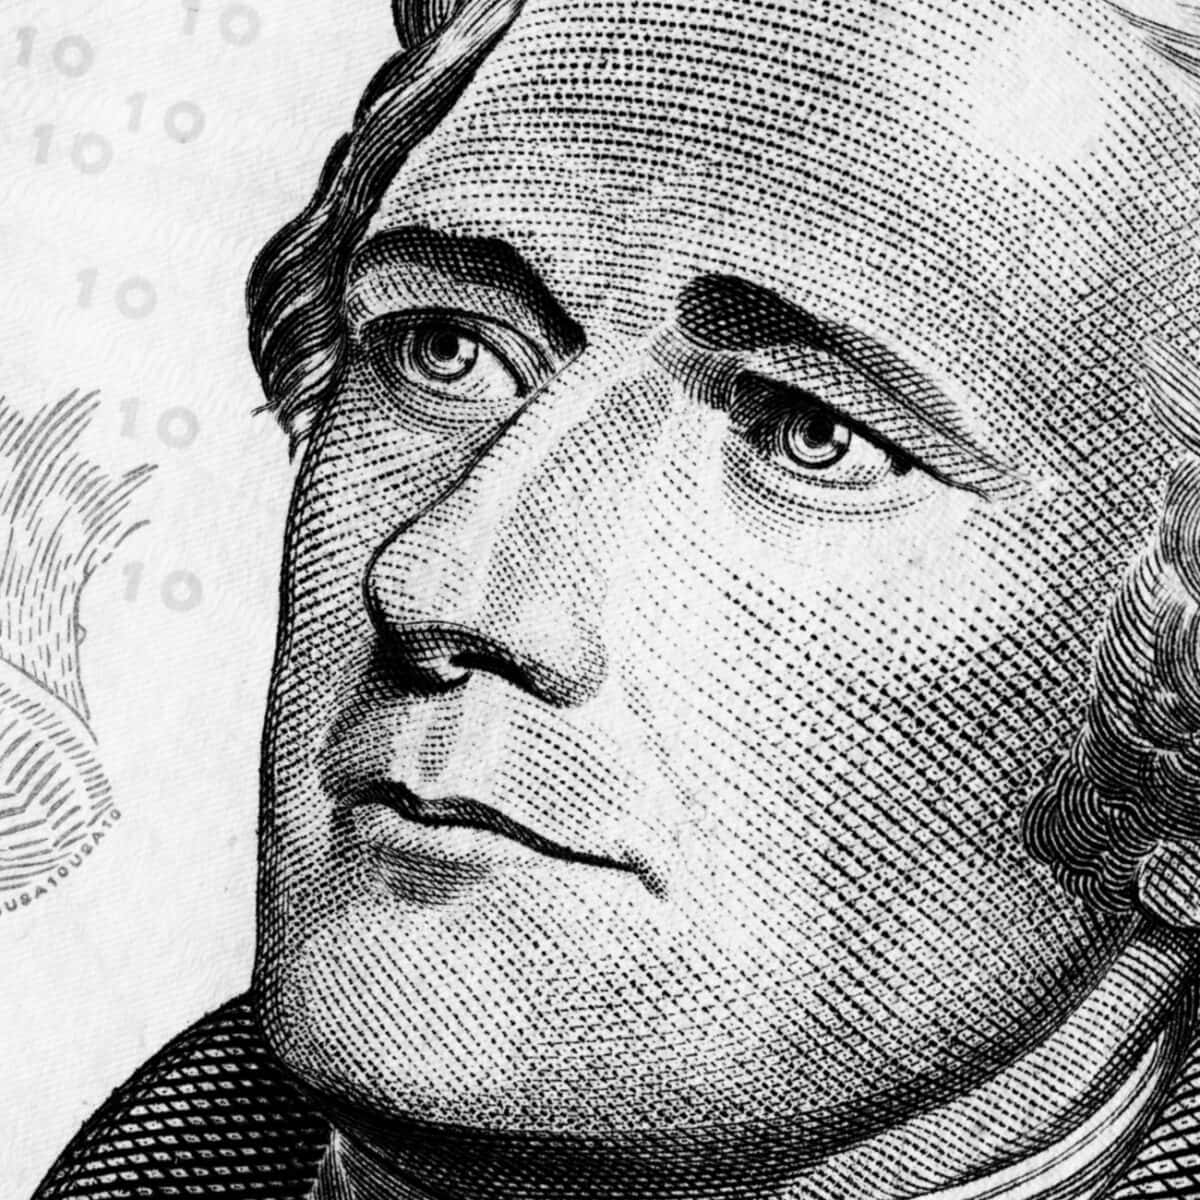 Unprimo Piano Di Un Ritratto Di George Washington Su Una Banconota Da Un Dollaro